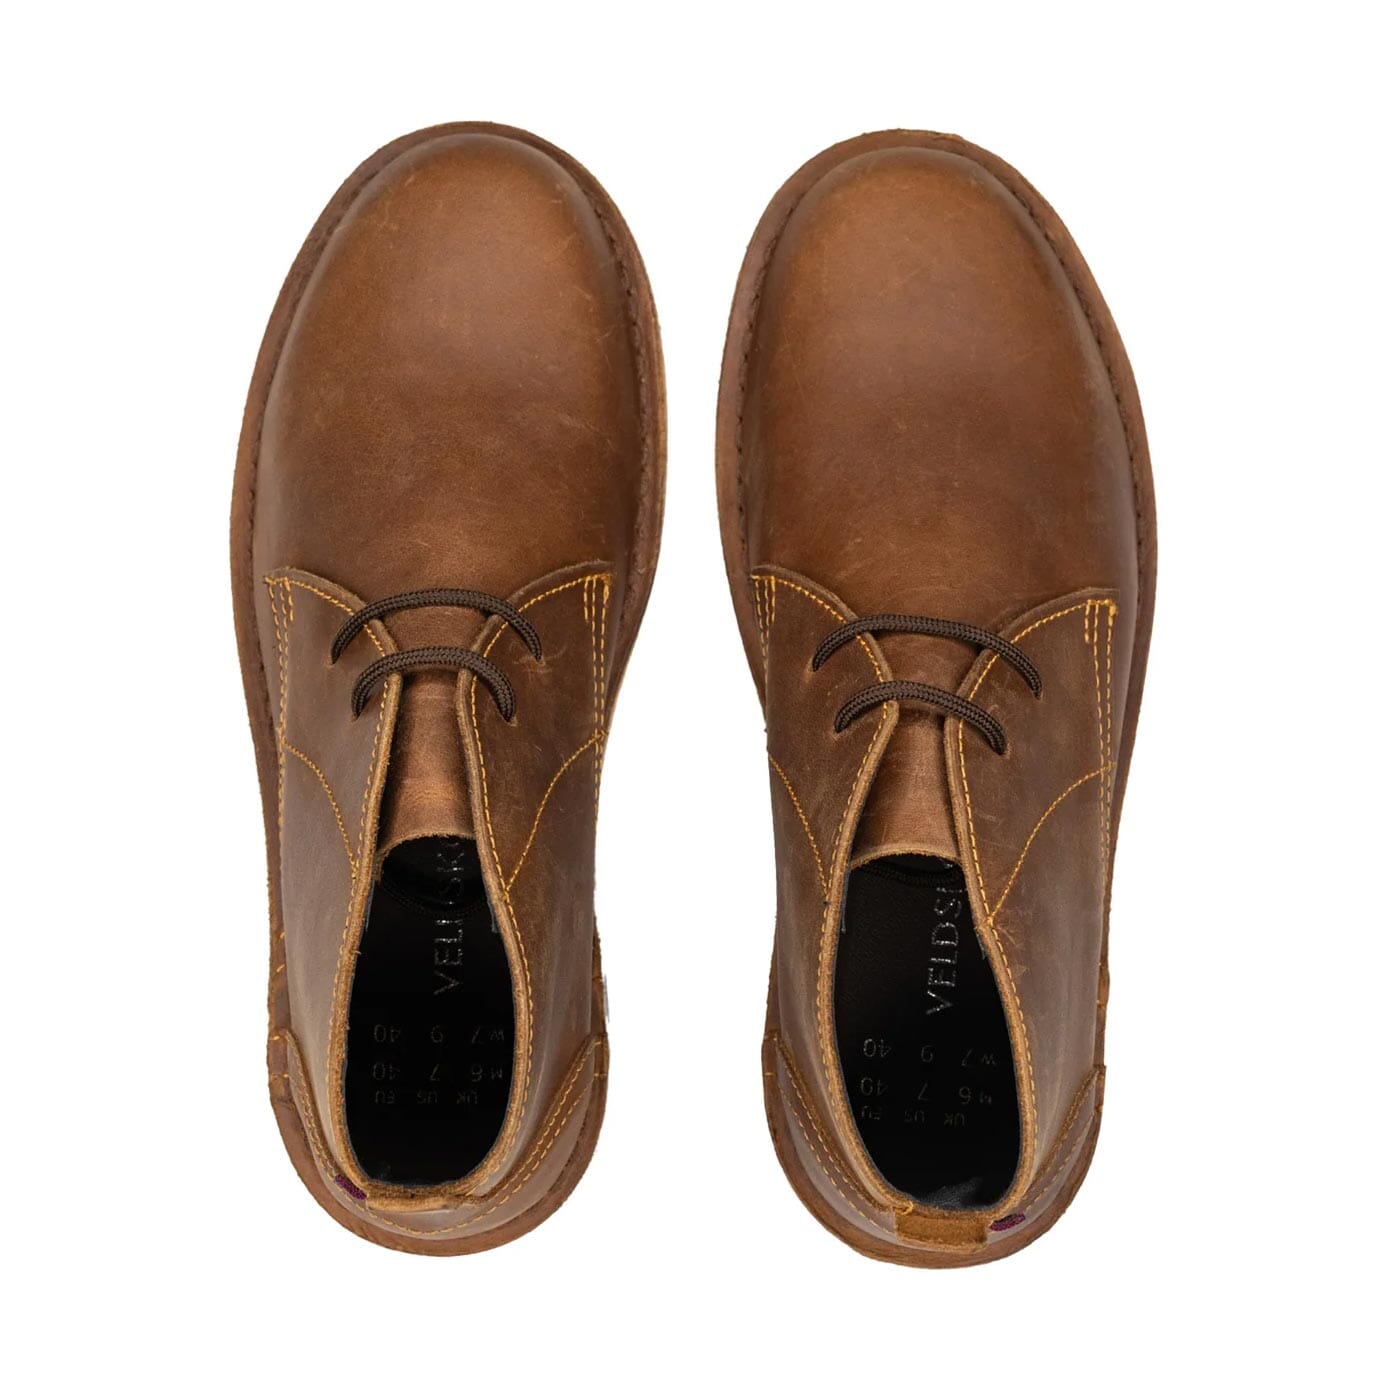 Veldskoen Chukka Brown Leather Boot Shoes Veldskoen 